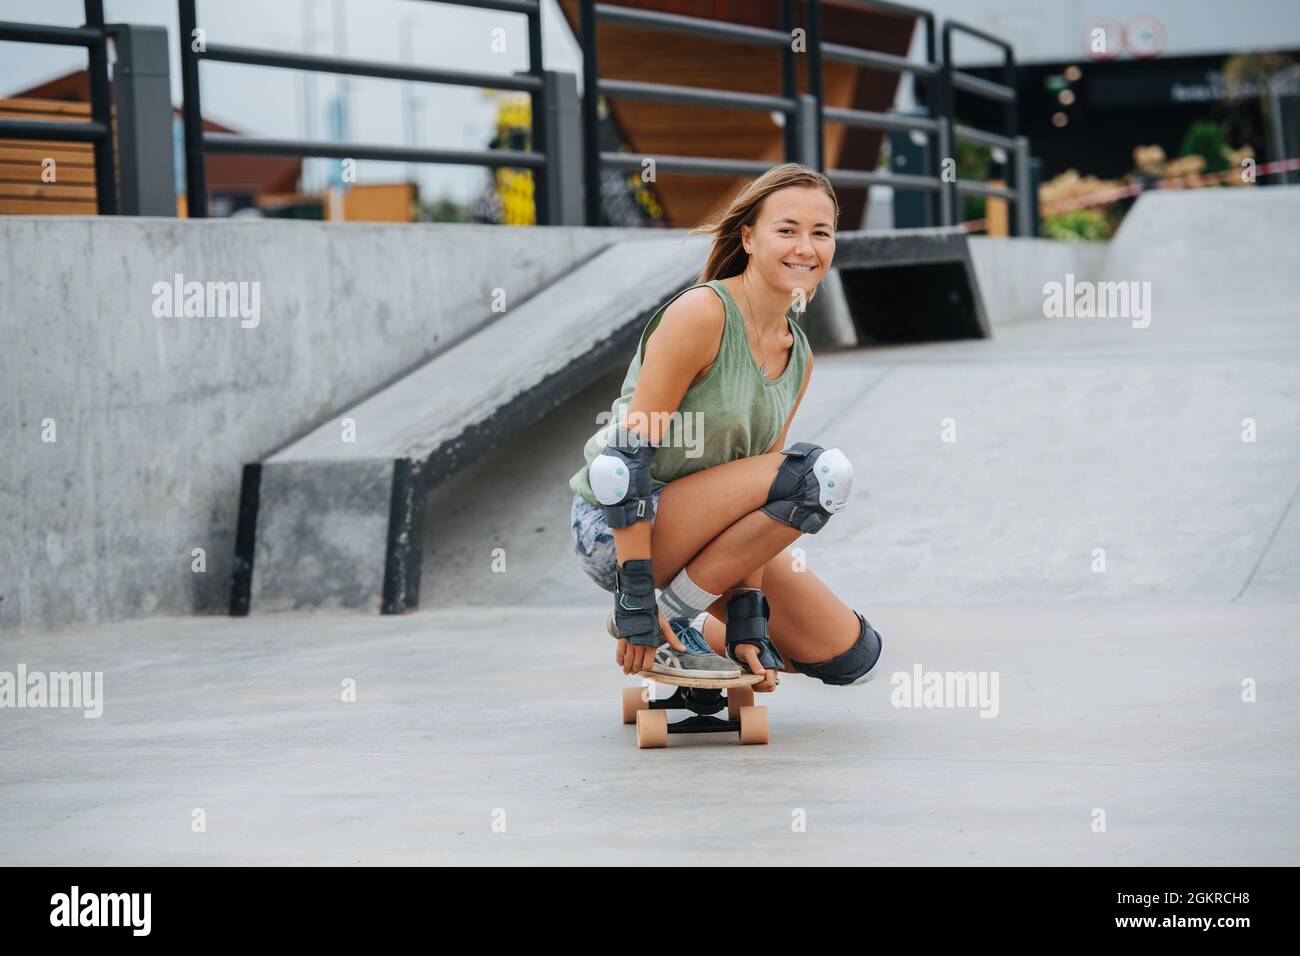 Joli blond joueur sur le skate roulant dans une position basse au skate  Park Photo Stock - Alamy